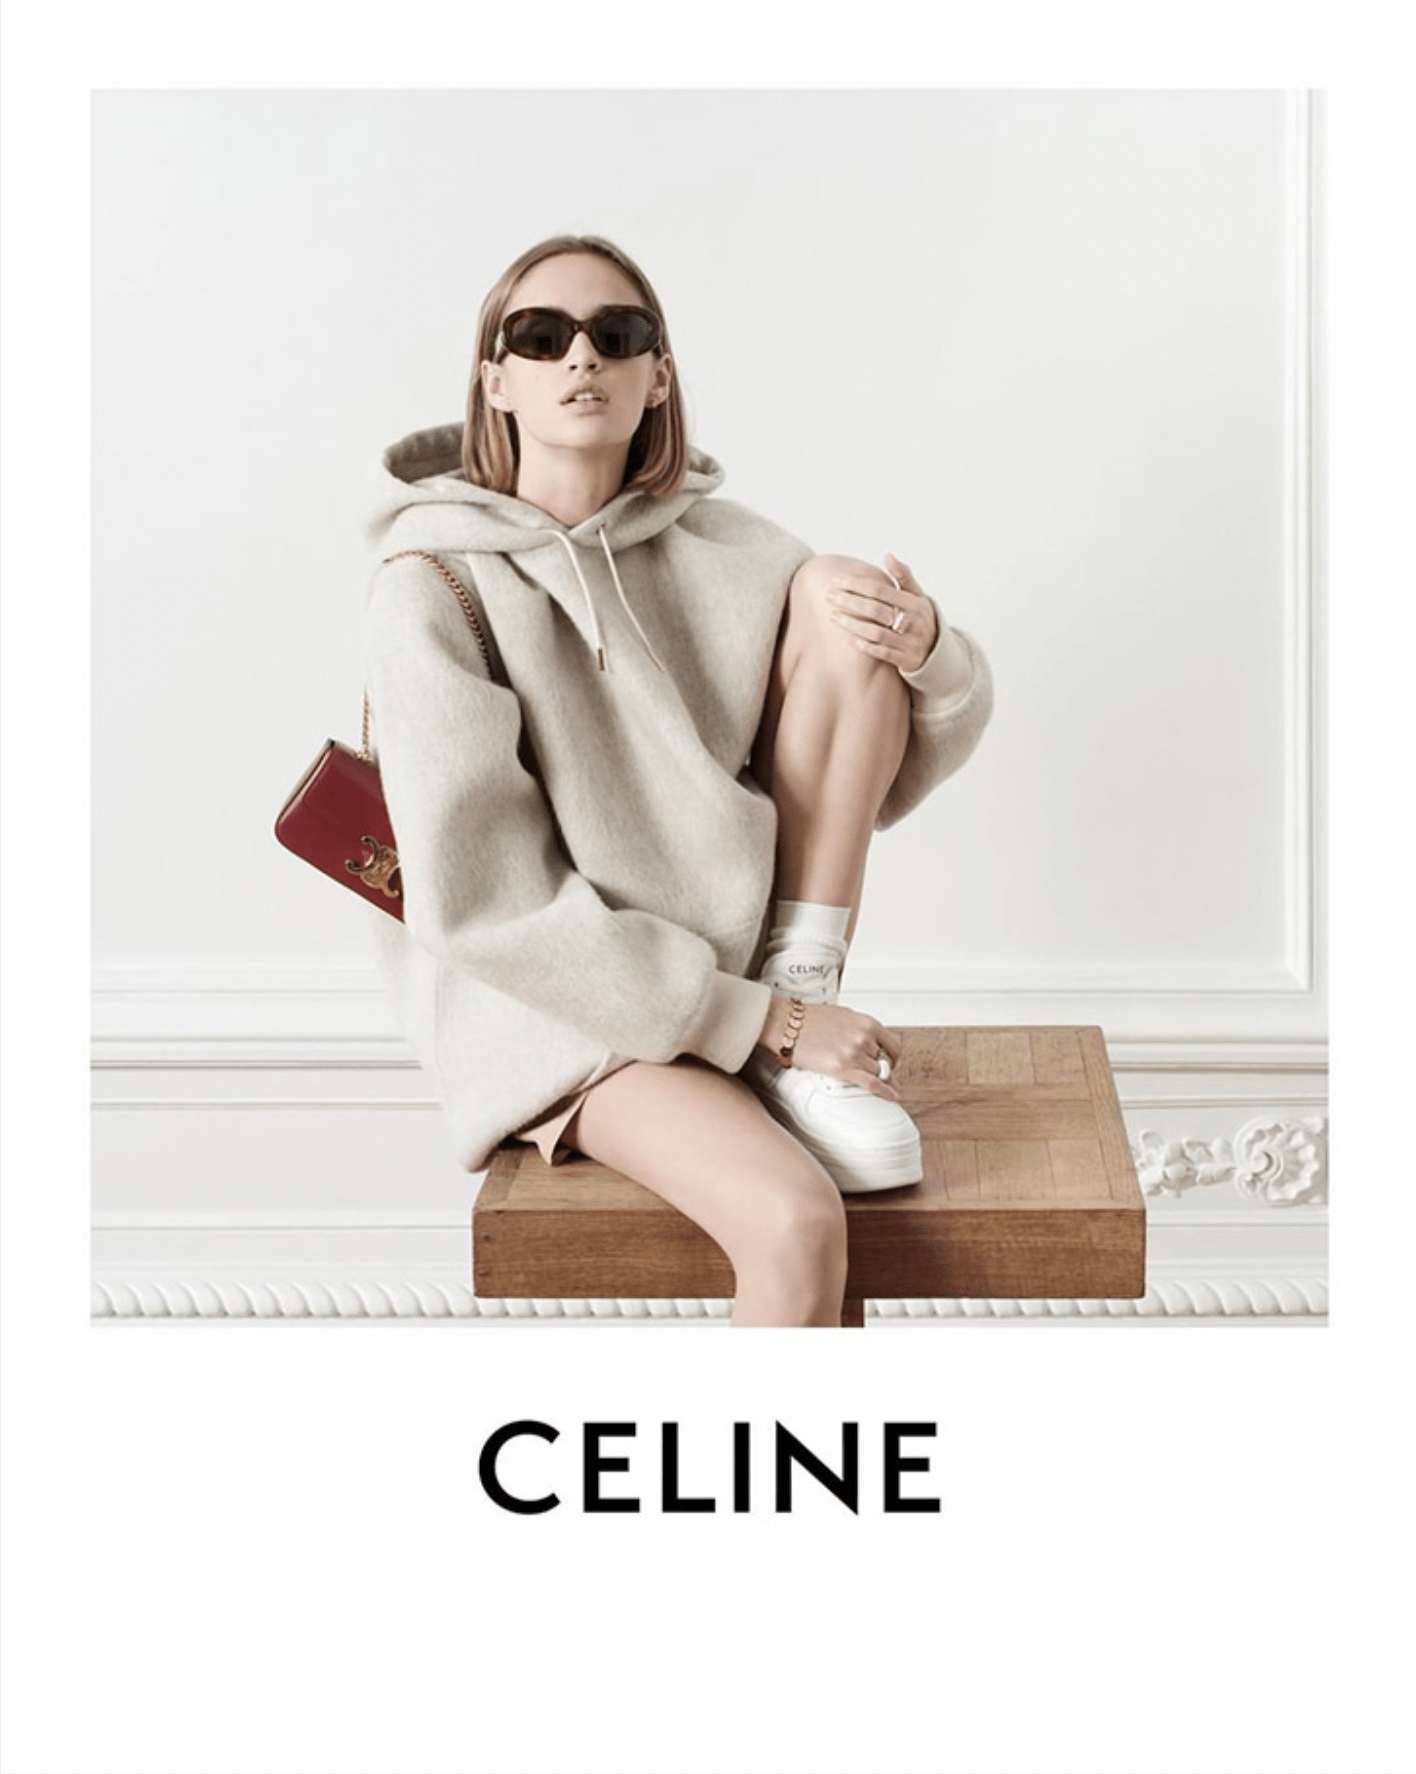 Celine 'Les Grands Classiques' 2022 Ad Campaign | The Impression